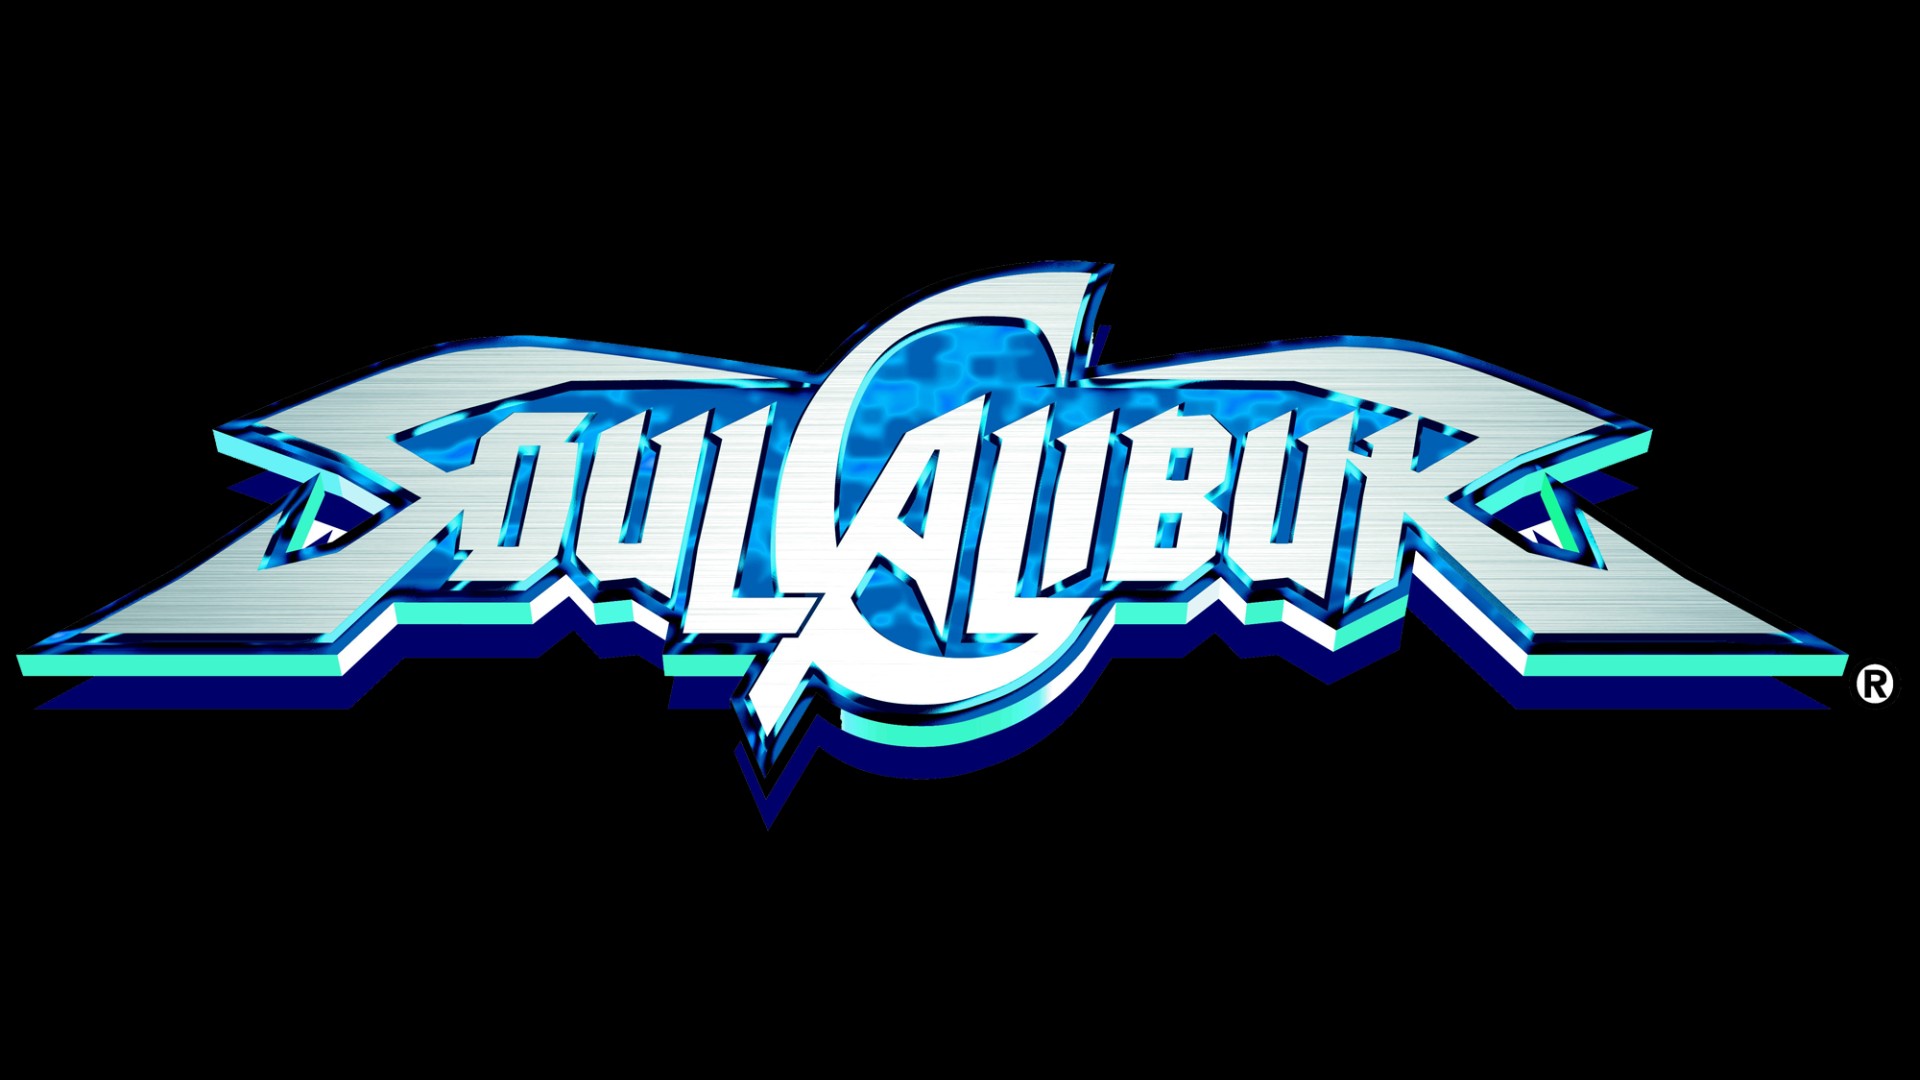 Скачать обои бесплатно Видеоигры, Soulcalibur, Лого картинка на рабочий стол ПК